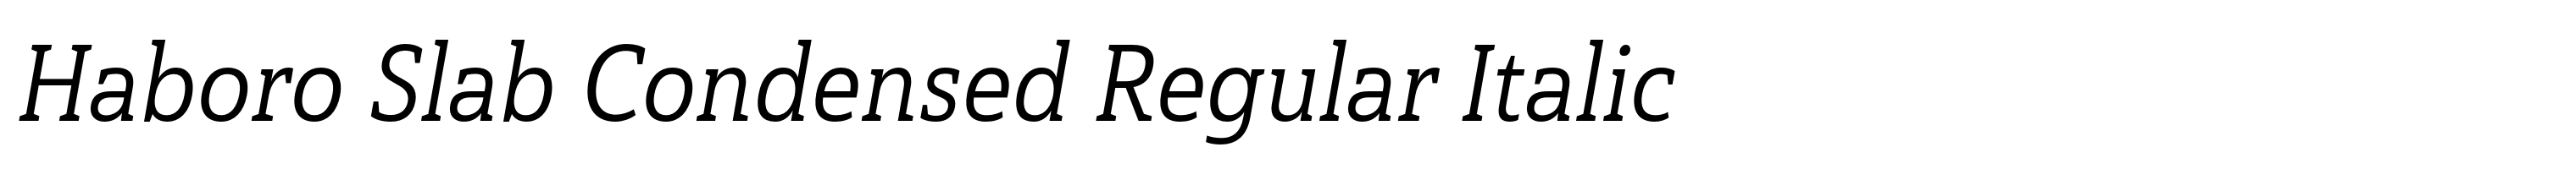 Haboro Slab Condensed Regular Italic